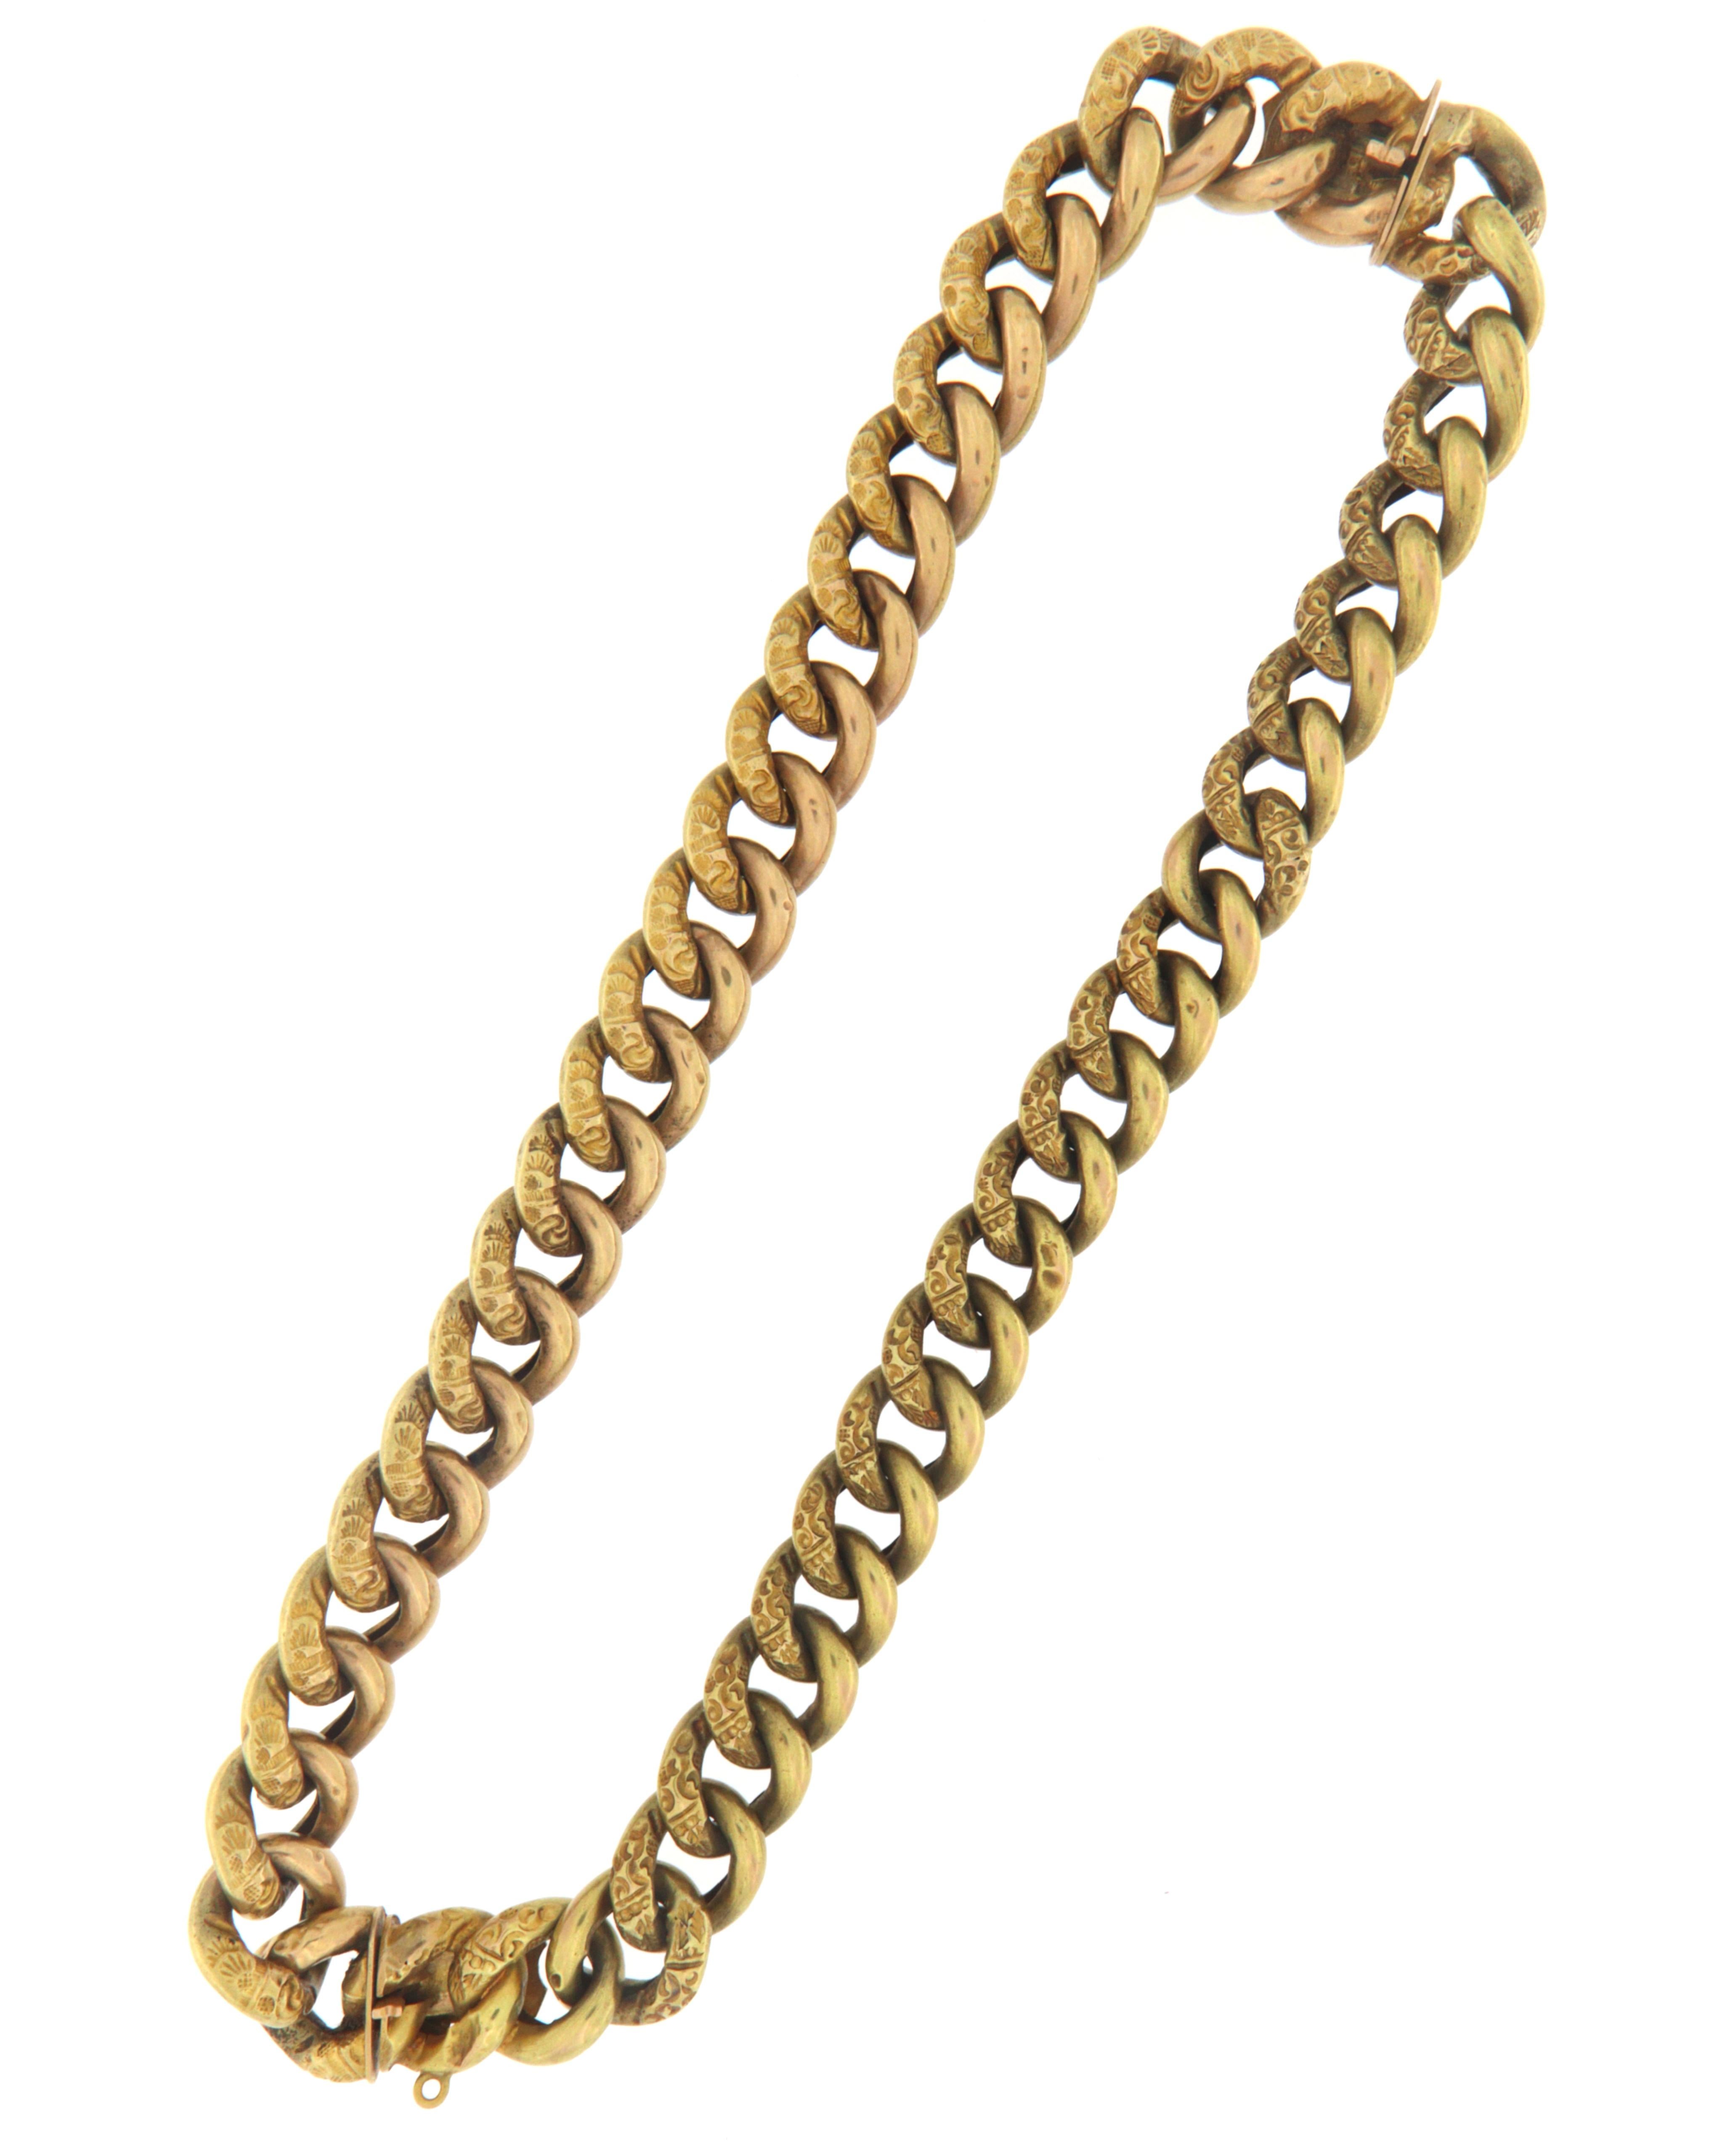 Grumetta Halskette des achtzehnten Jahrhunderts in den siebziger Jahren vollständig von Hand durch erfahrene italienische Handwerker in 14 Karat Gelbgold mit doppelter Schließe, die die Möglichkeit, die Kette in zwei Armbänder zu verwandeln gibt